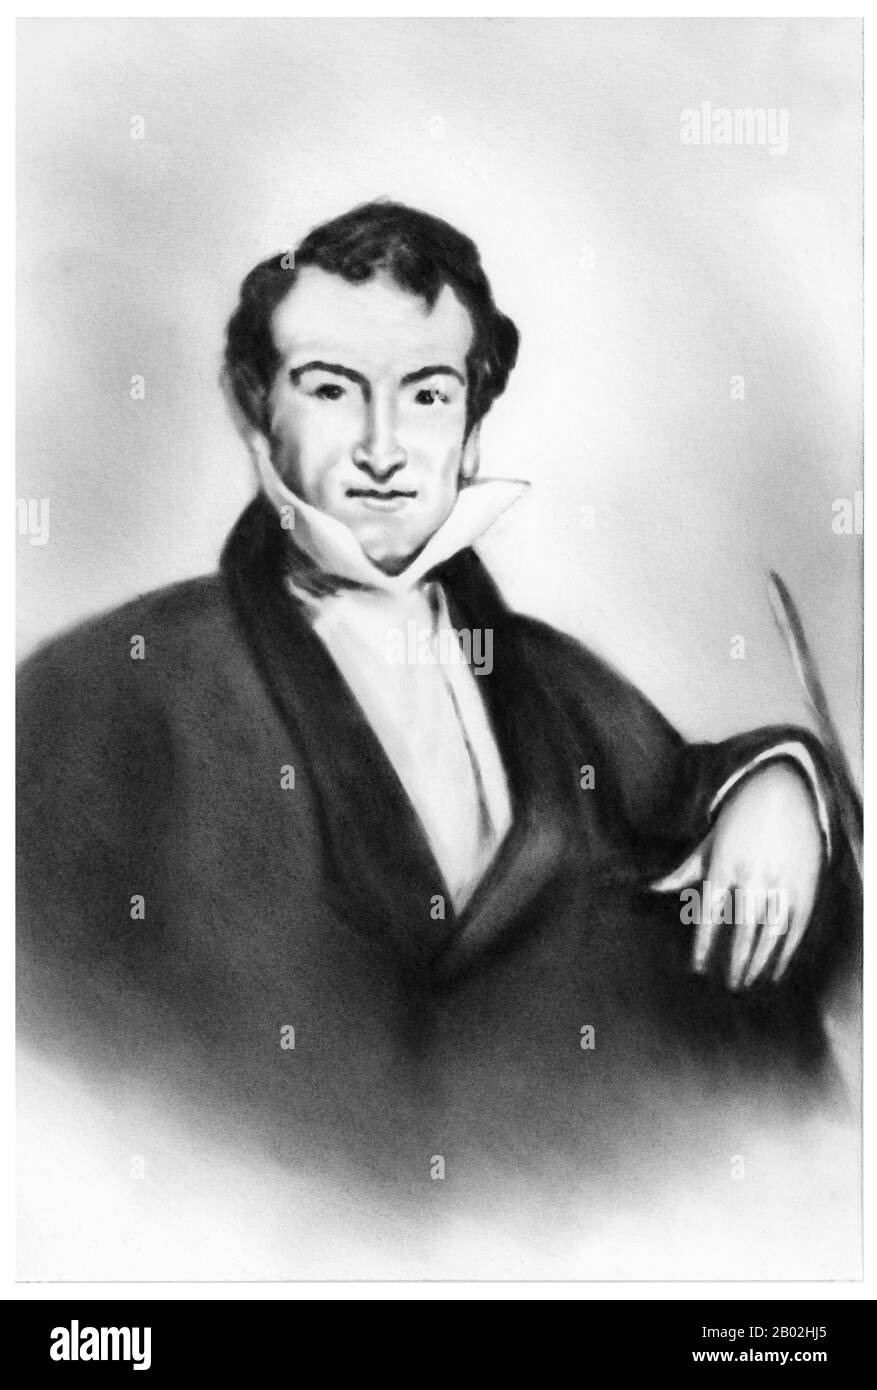 Samuel Russell est né à Middletown, dans le Connecticut, le 25 août 1789, au capitaine John Russell et à Abigail Warner. Russell était orphelin à l'âge de 12 ans, n'a reçu aucun héritage important, et n'a pas assisté à l'université. Au lieu de cela, il a commencé sa carrière comme apprenti greffier pour un marchand de commerce maritime, Whittlesley & Alsop, à Middletown. C'est là que Russell a commencé à apprendre ses compétences en tant que Trader. En 1810, son apprentissage ayant pris fin, il s'installe à New York où il espérait prospérer. En 1812, il rejoint Hull & Griswold, une maison de commerce, basée à New York mais établie par les investisseurs Wit Banque D'Images